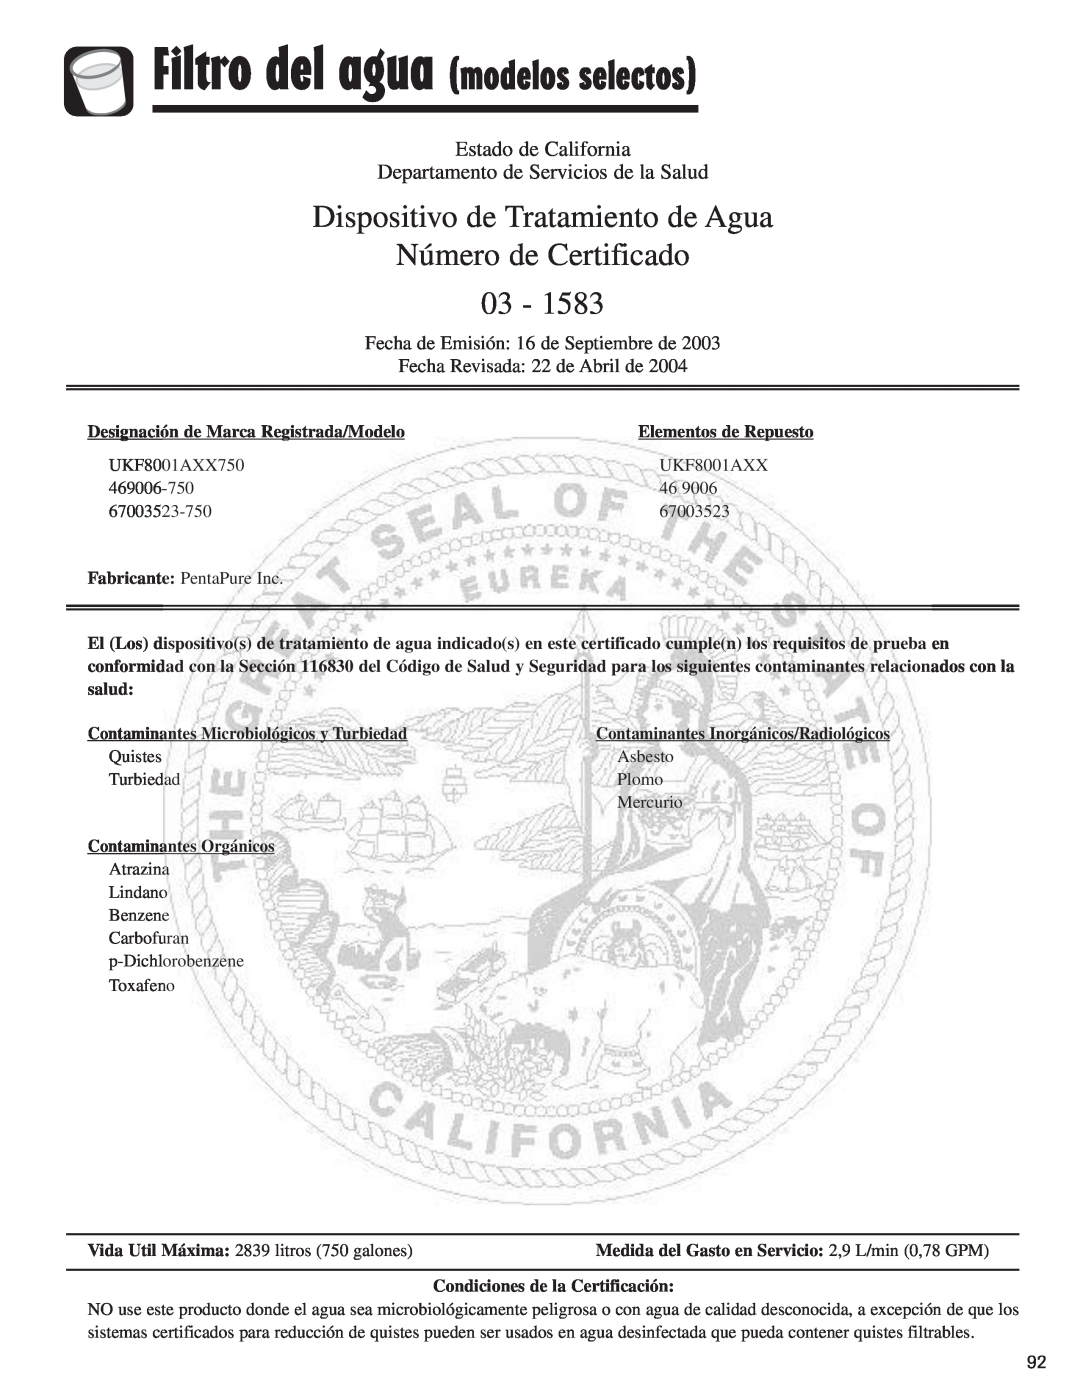 Amana ASD2624HEQ Dispositivo de Tratamiento de Agua, Número de Certificado 03, Estado de California 